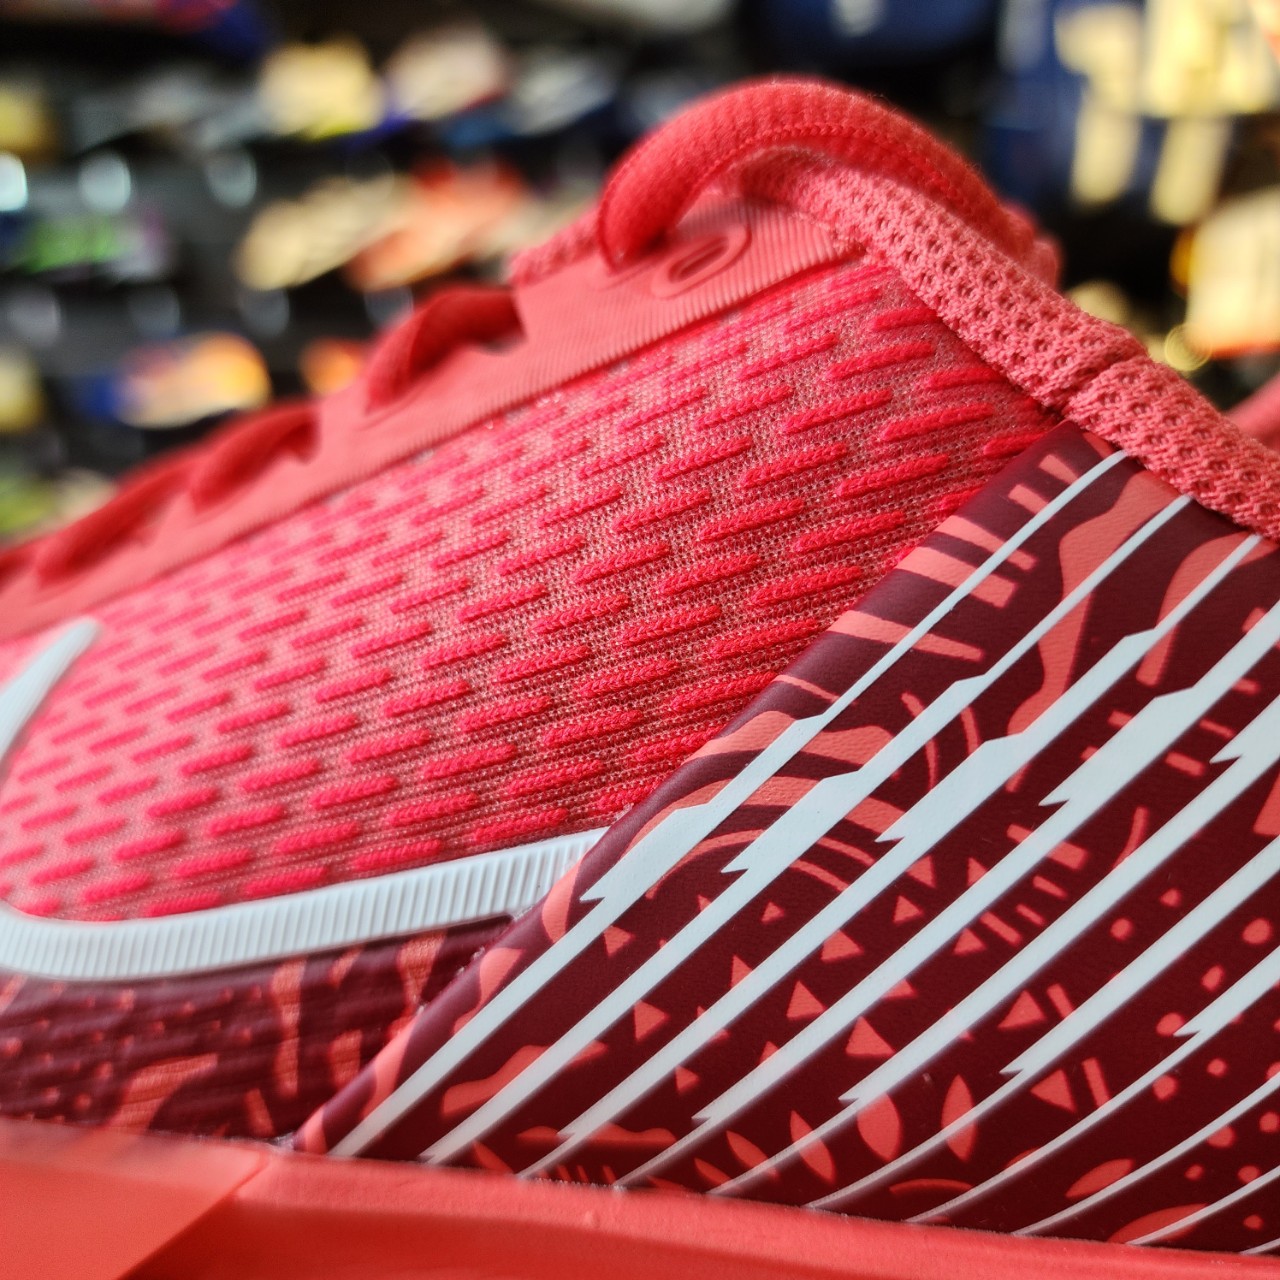 Giày Tennis Nike Vapor Pro 2 - Sự Lựa Chọn Hoàn Hảo